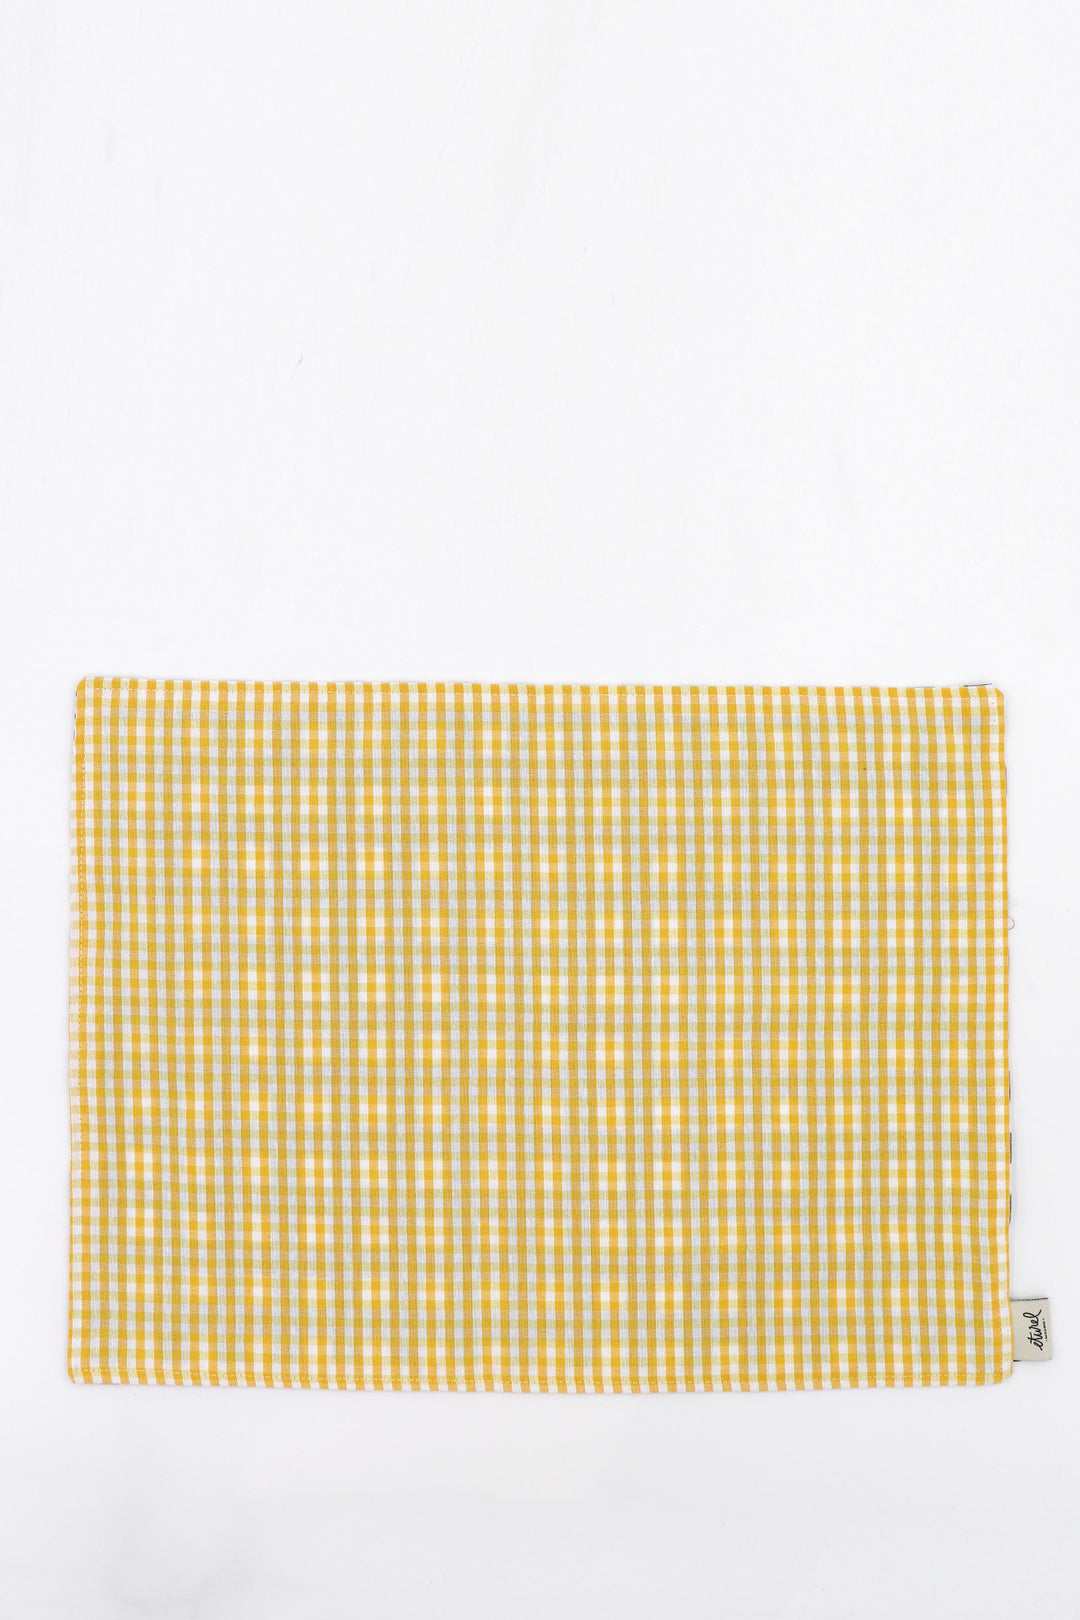 Mantel individual reversible 2 uds. cuadros vichy amarillo y gris